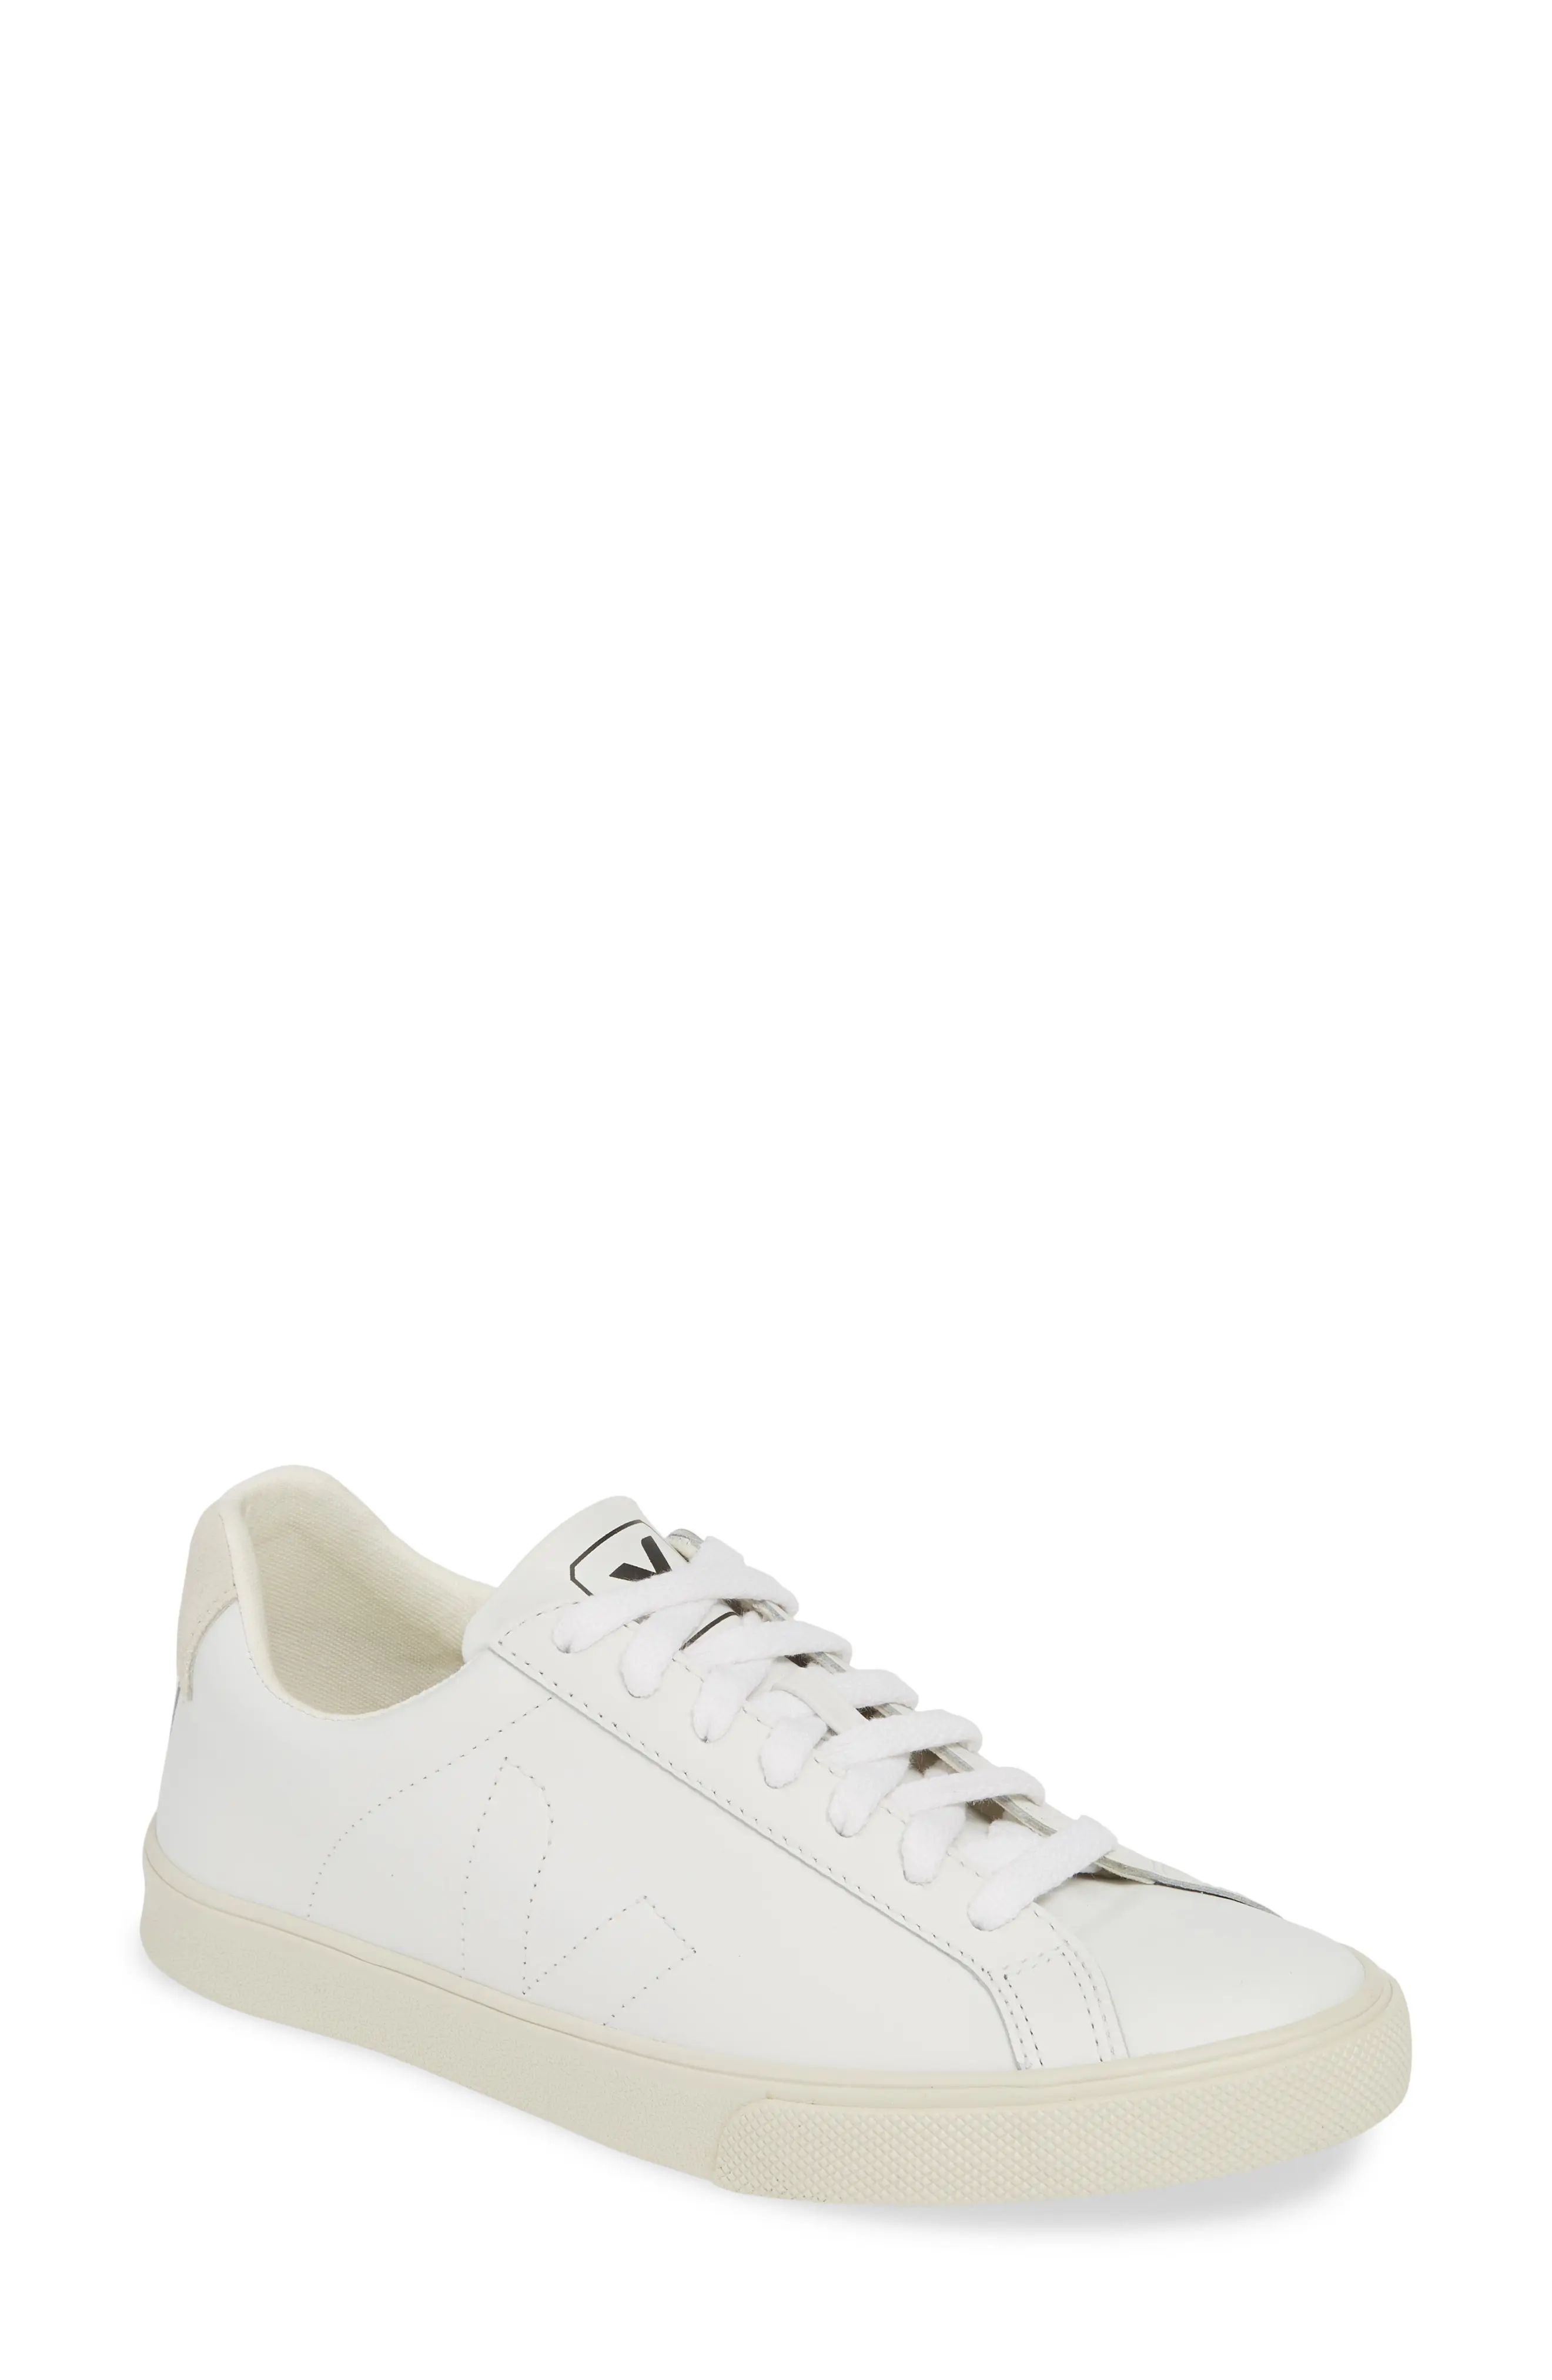 Veja Espalar Sneaker in Extra White at Nordstrom, Size 37Eu | Nordstrom